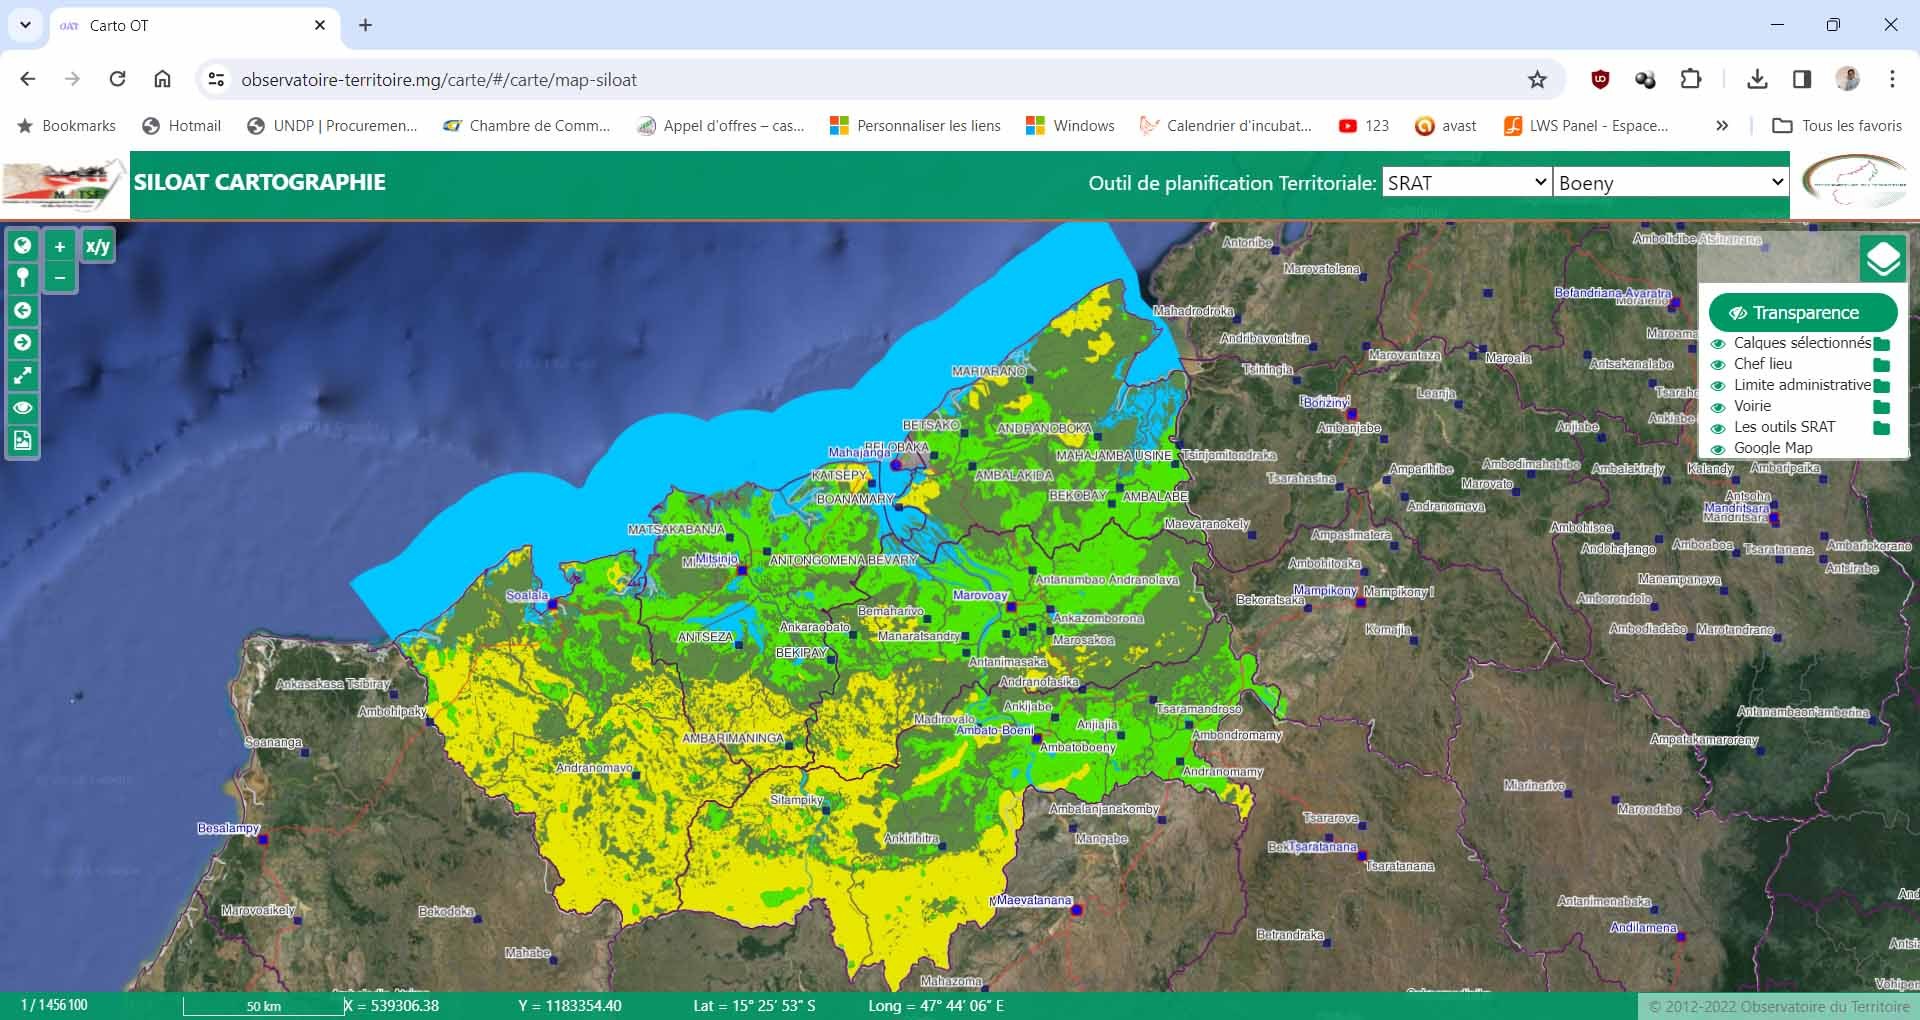 Schéma d'aménagement du territoire région Boeny, publié sur webmapping